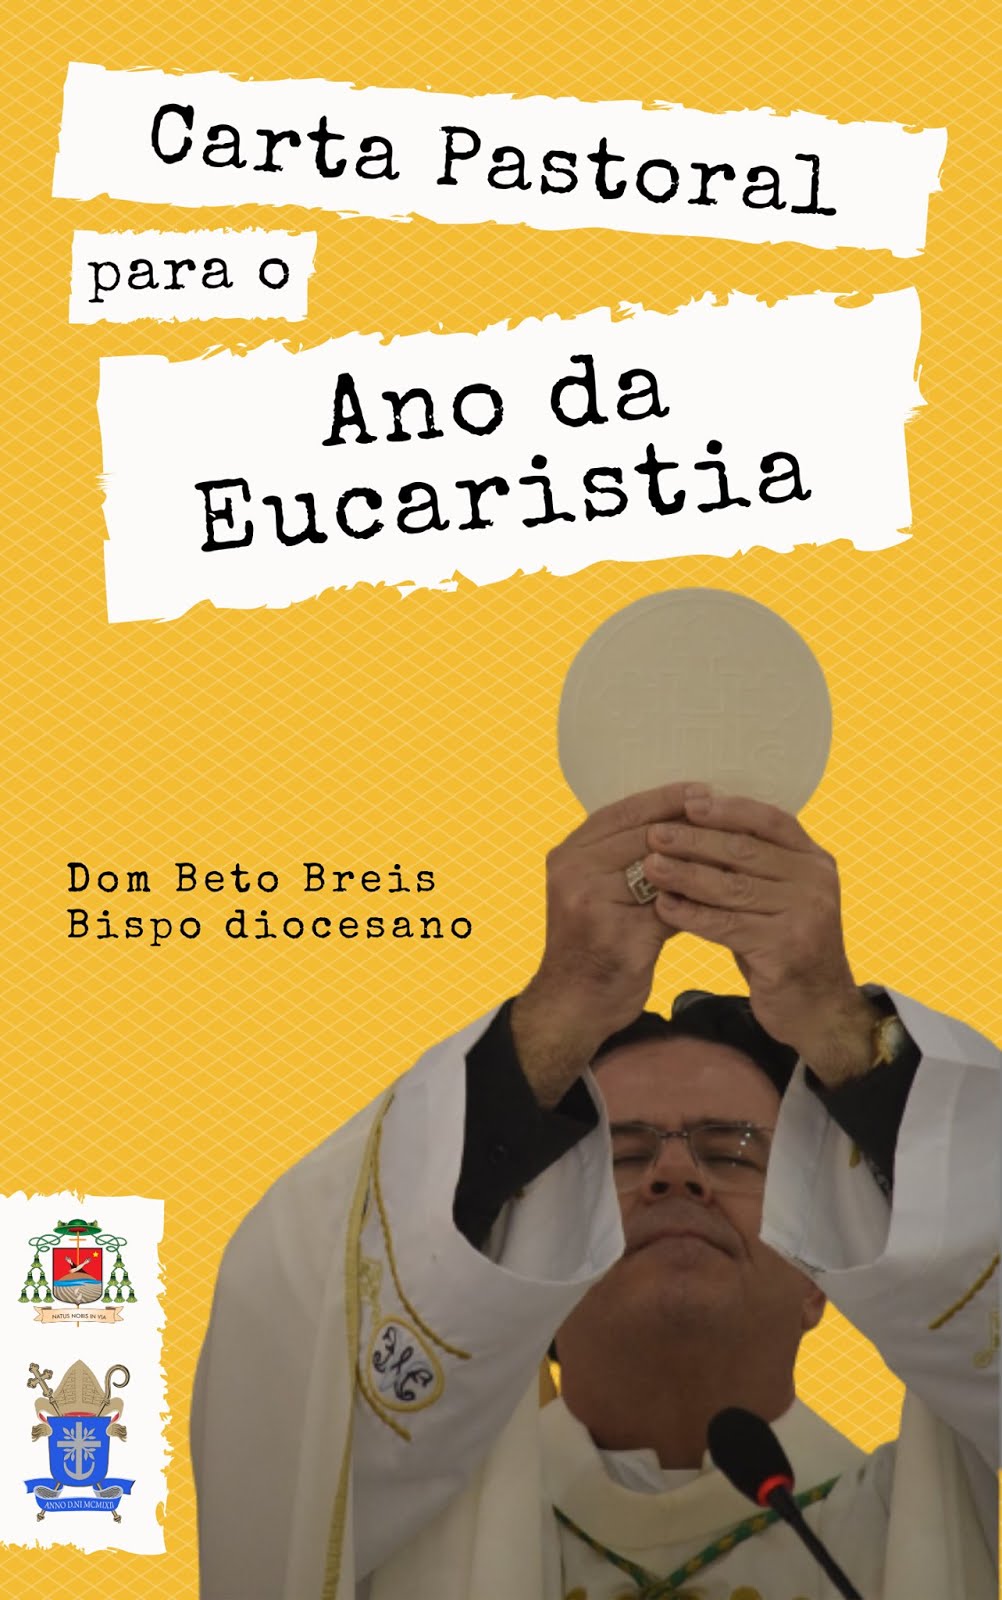 CARTA PASTORAL DO BISPO DIOCESANO - DOM BETO BREIS